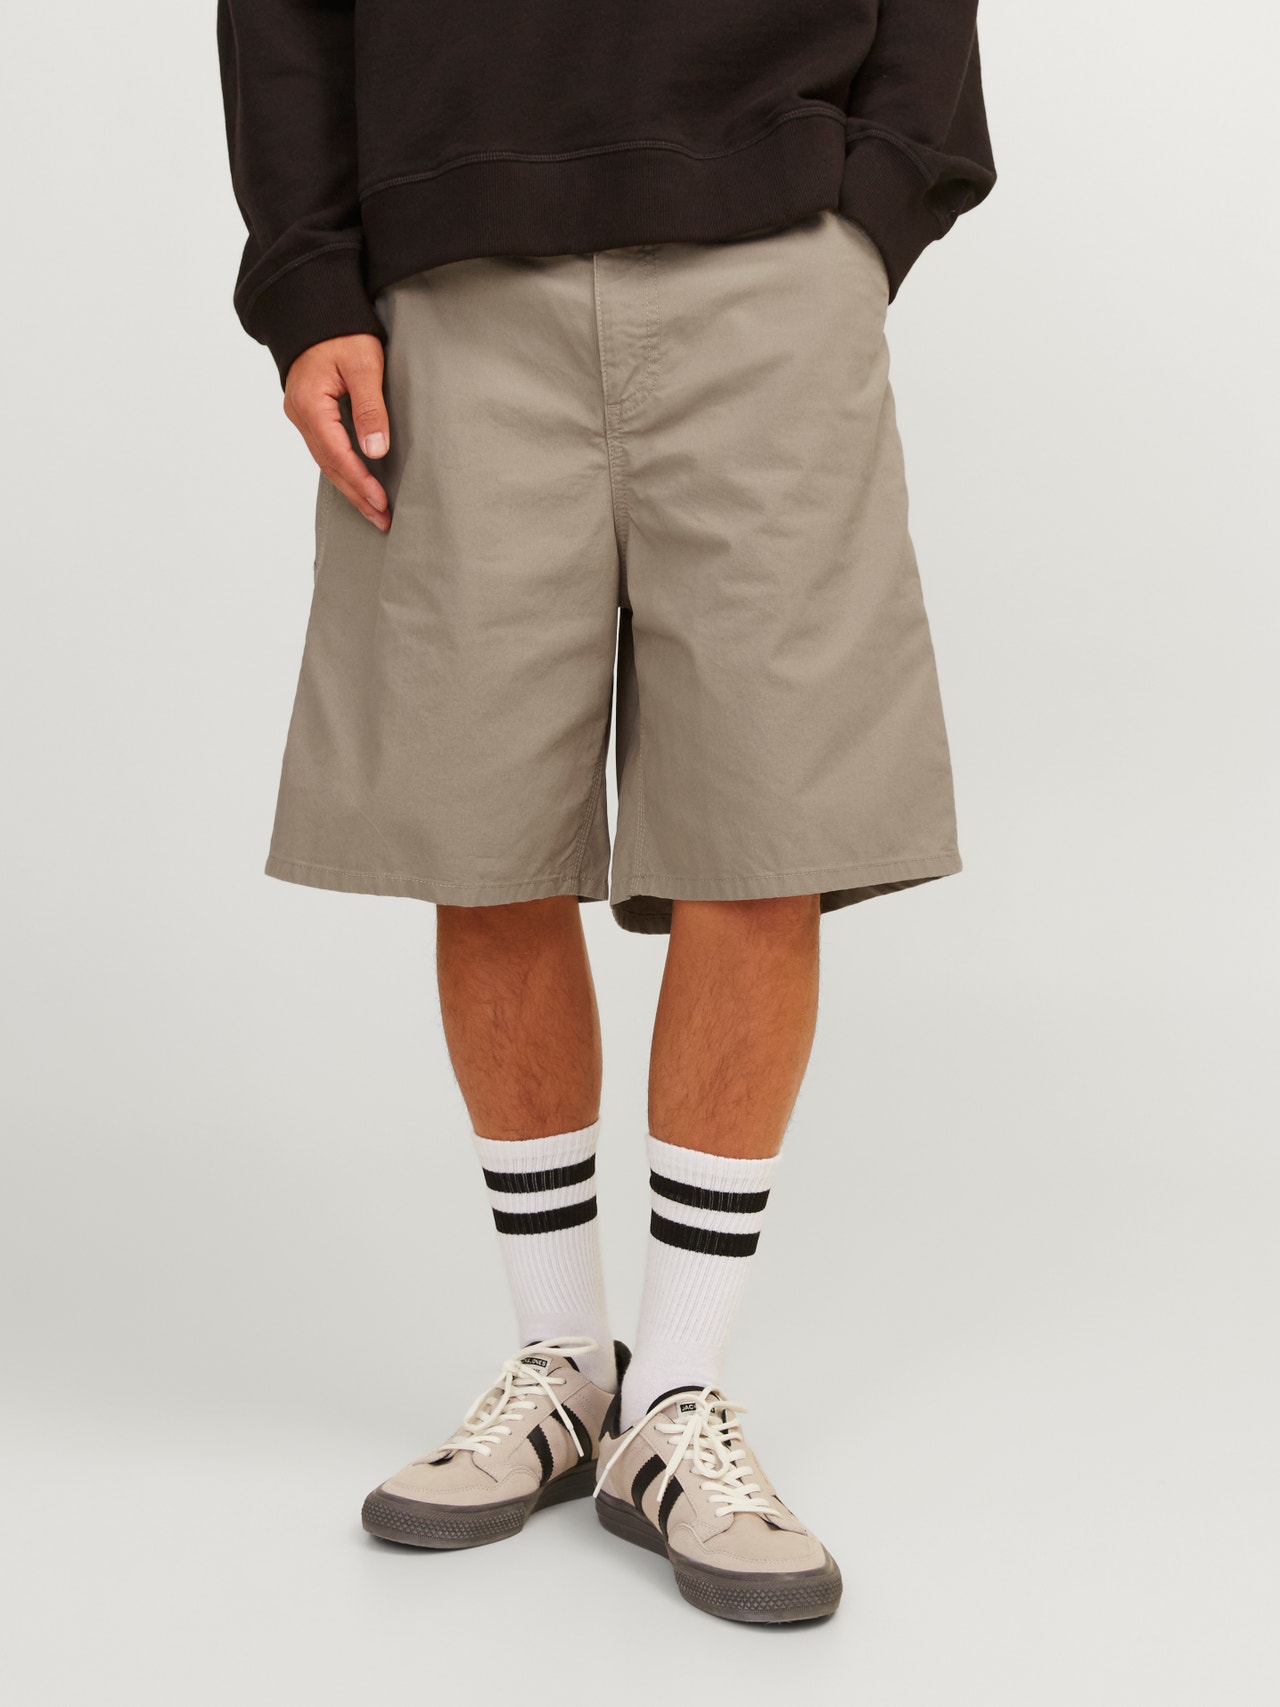 Jack & Jones Regular Fit Shorts med 5 lommer -Crockery - 12232118